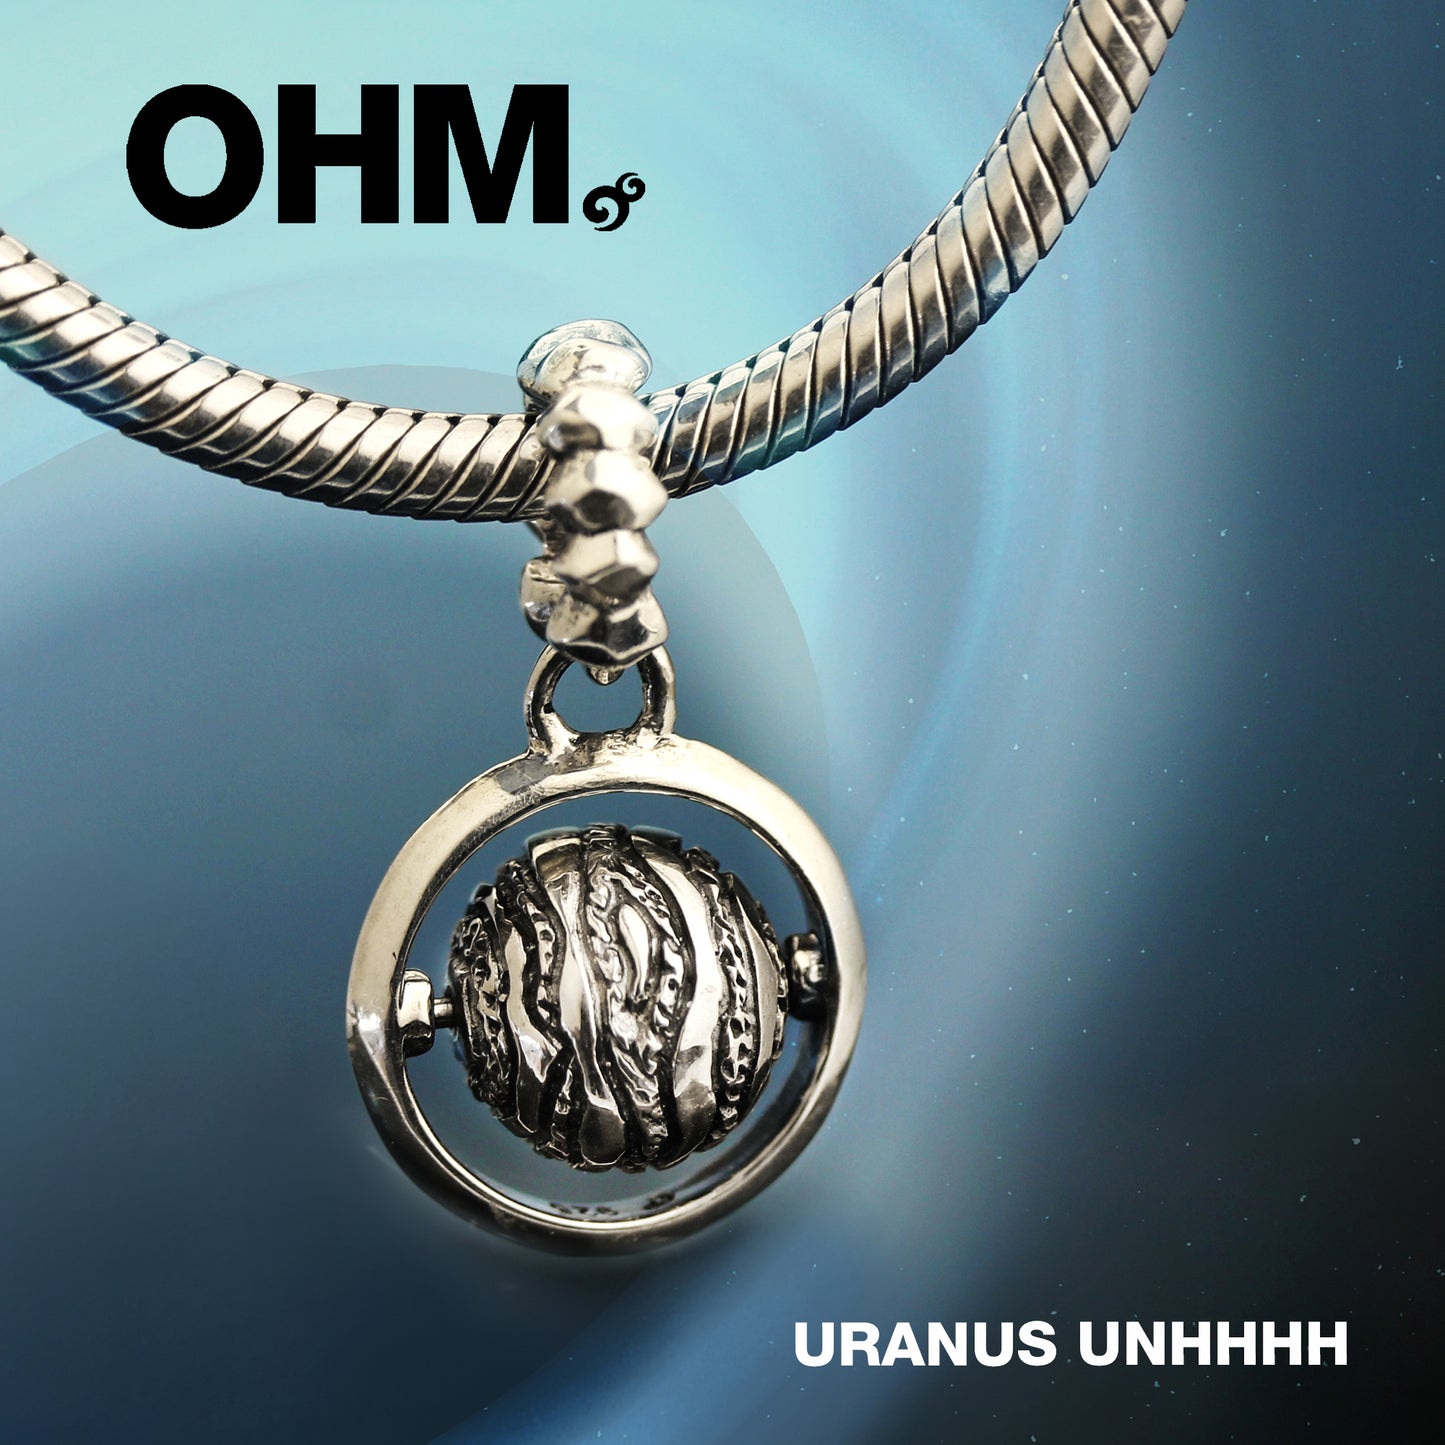 Uranus Unhhhh